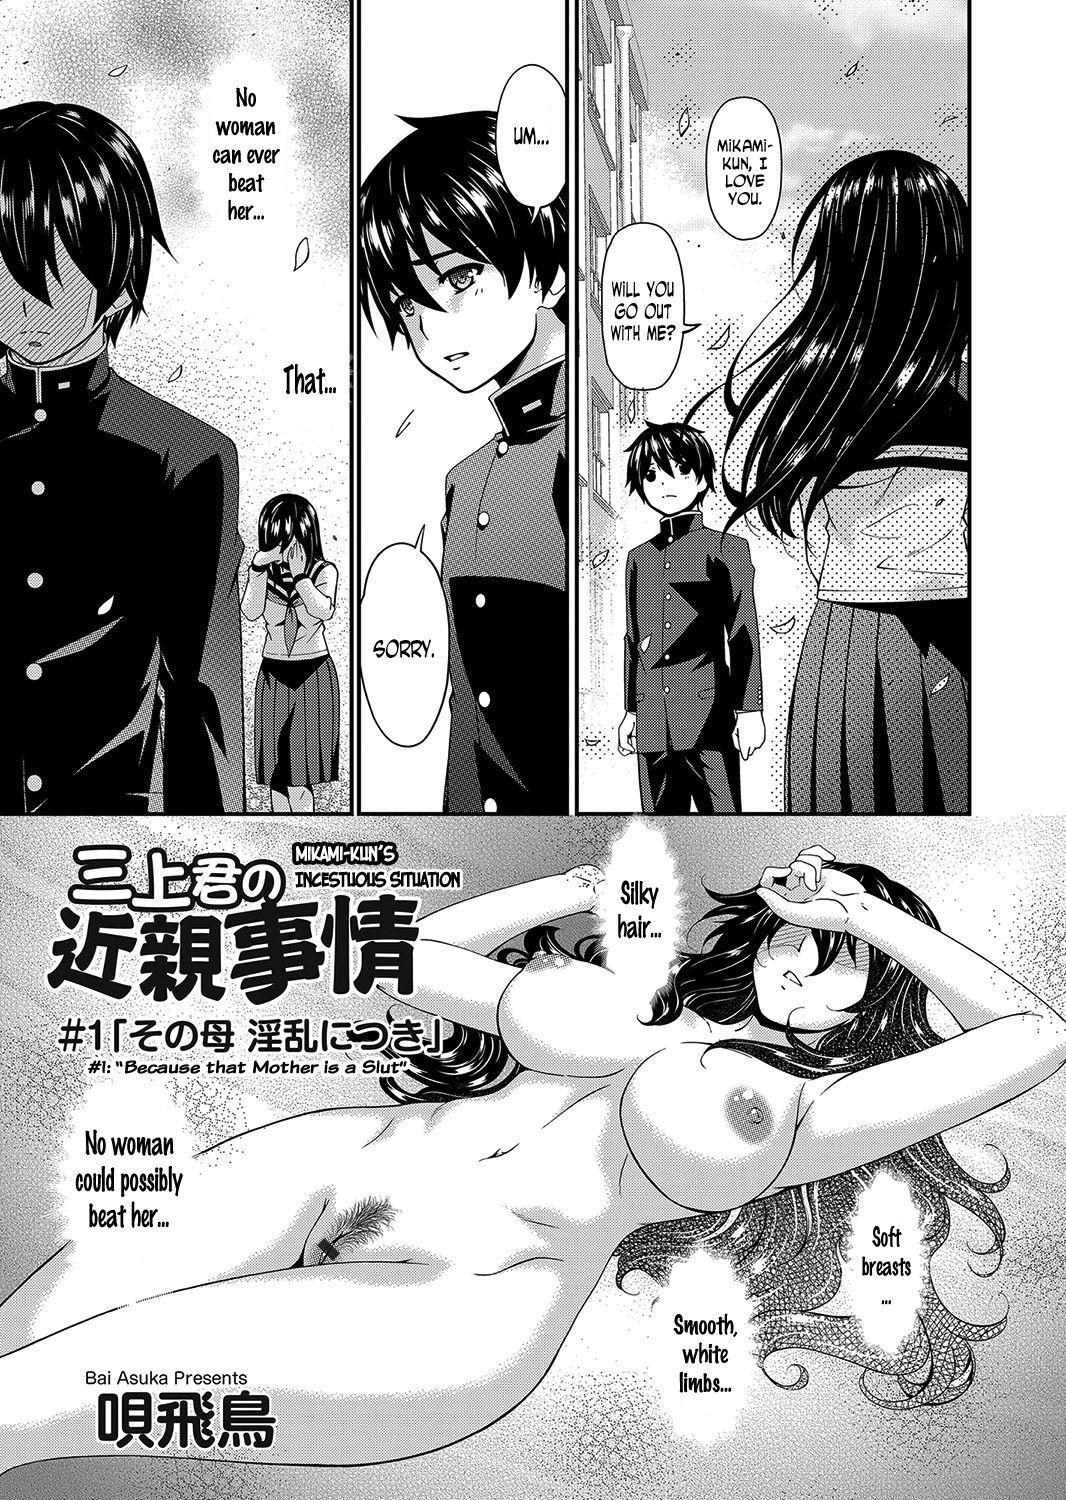 [Bai Asuka] Mikami-kun no Kinshin Jijou #1 "Sono Haha Inran ni Tsuki" | Mikami-kun’s Incestuous Situation Ch. 1 (COMIC Magnum Vol. 107) [English] [N04H] 0